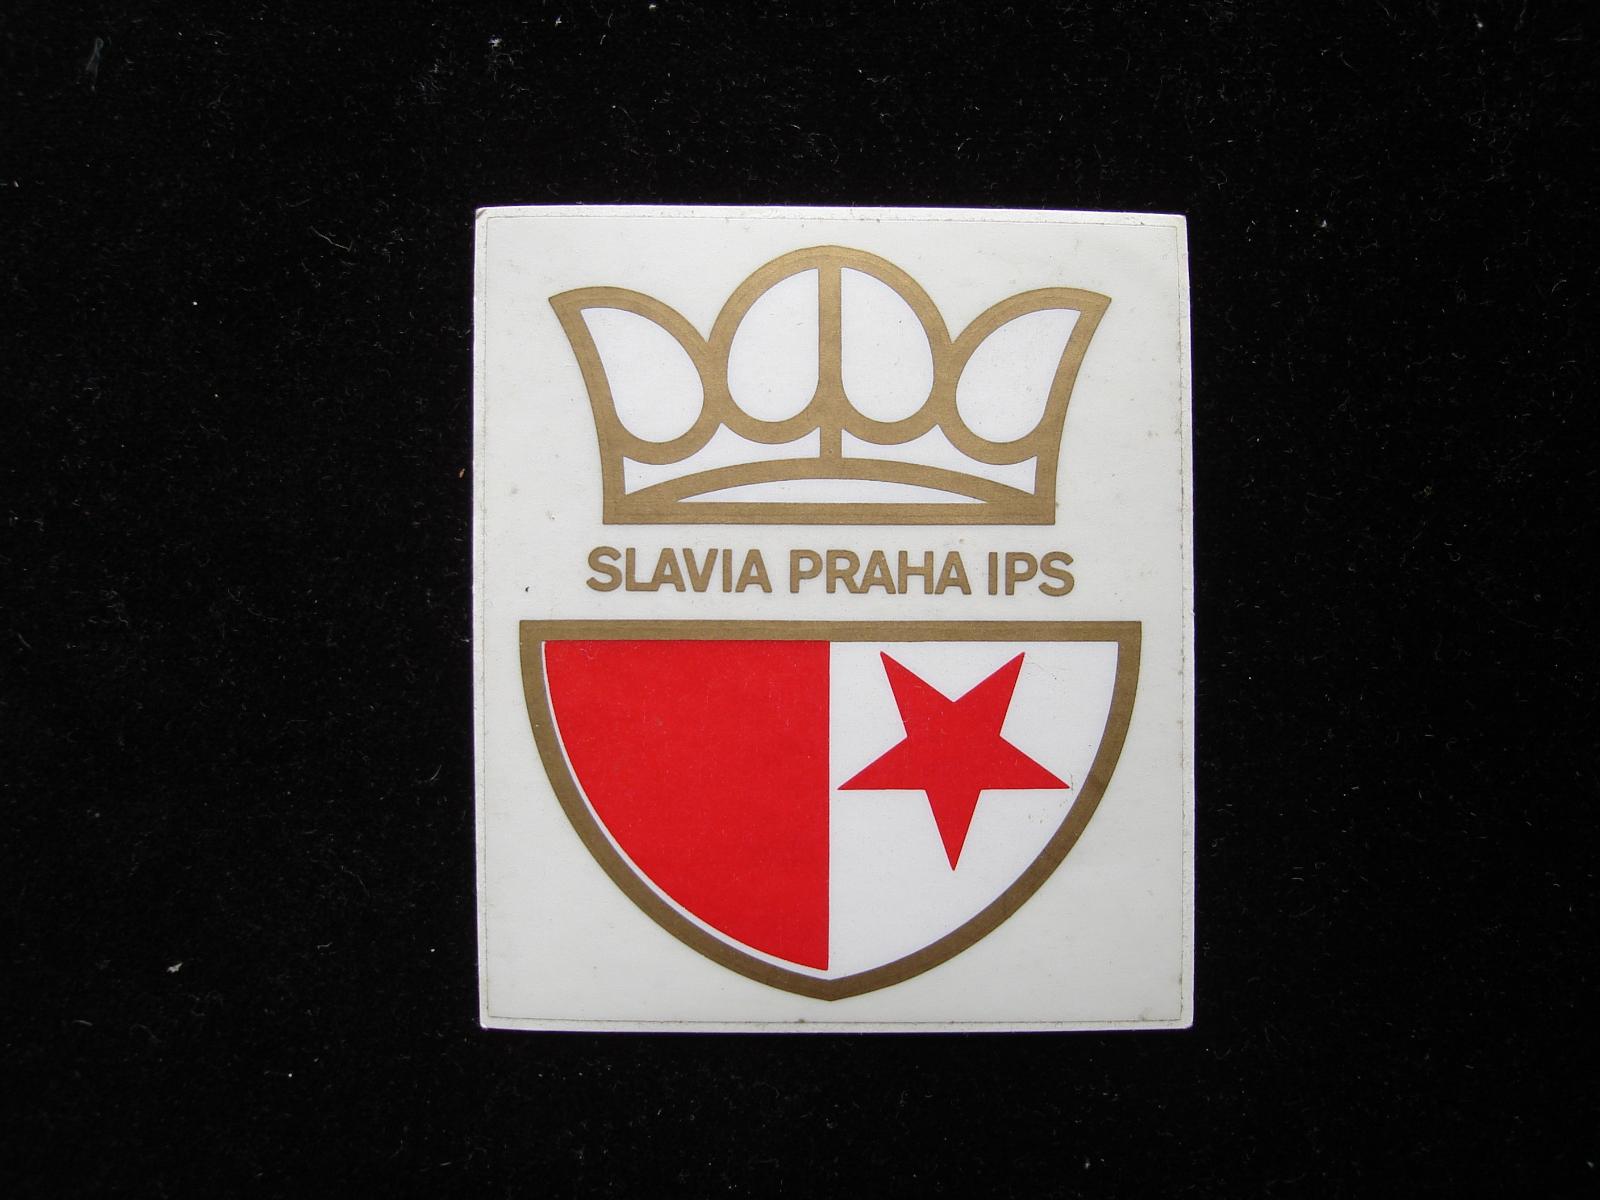 ASK Slavia Praha